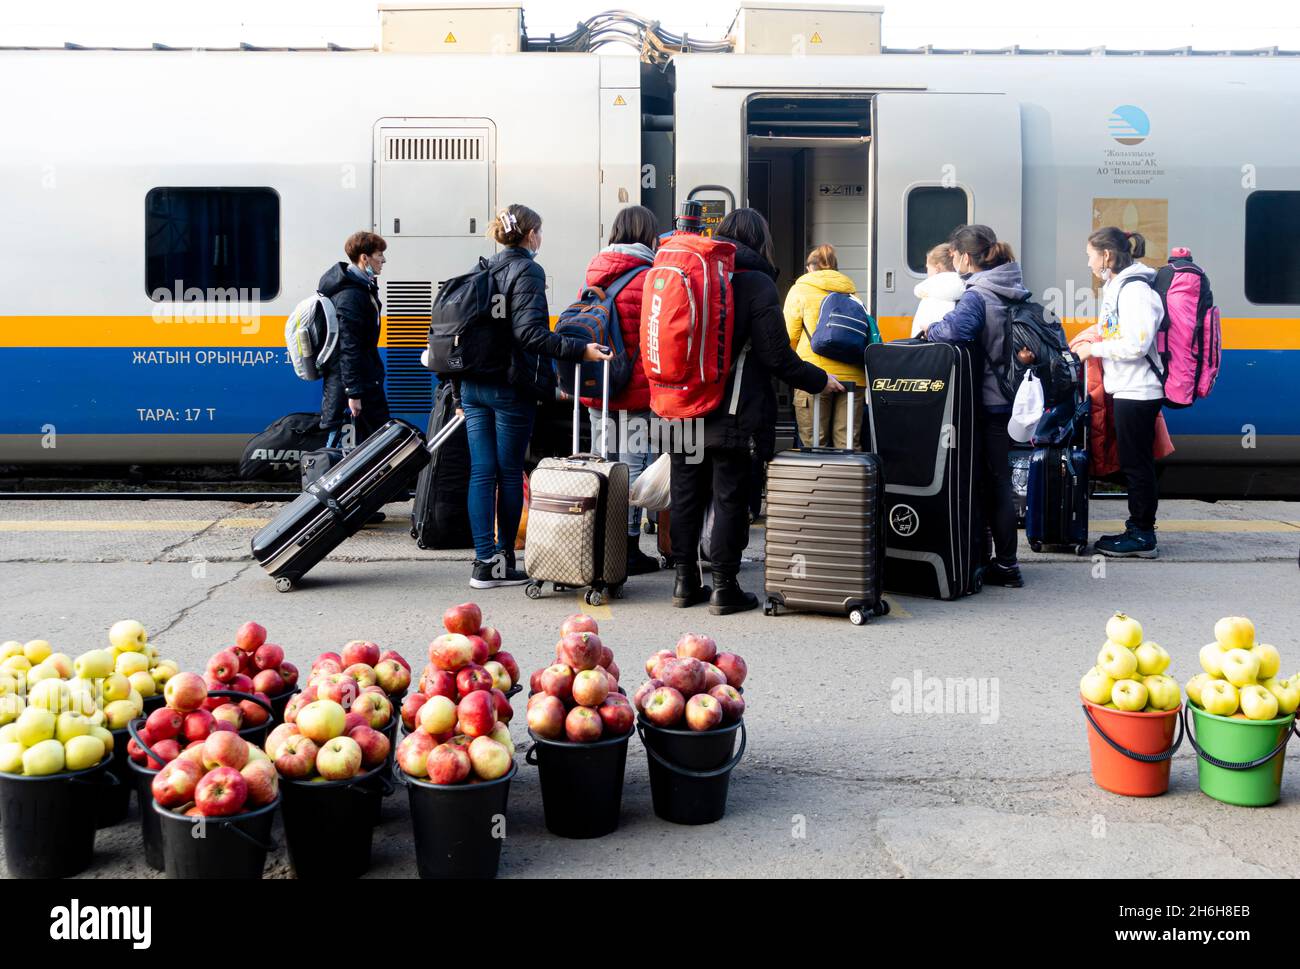 Passeggeri che si imbarcarono su un treno alla fermata del treno. I secchi con mele fresche d'autunno sono messi sul terreno per la vendita da parte dei venditori locali. Almaty, Kazakistan Foto Stock